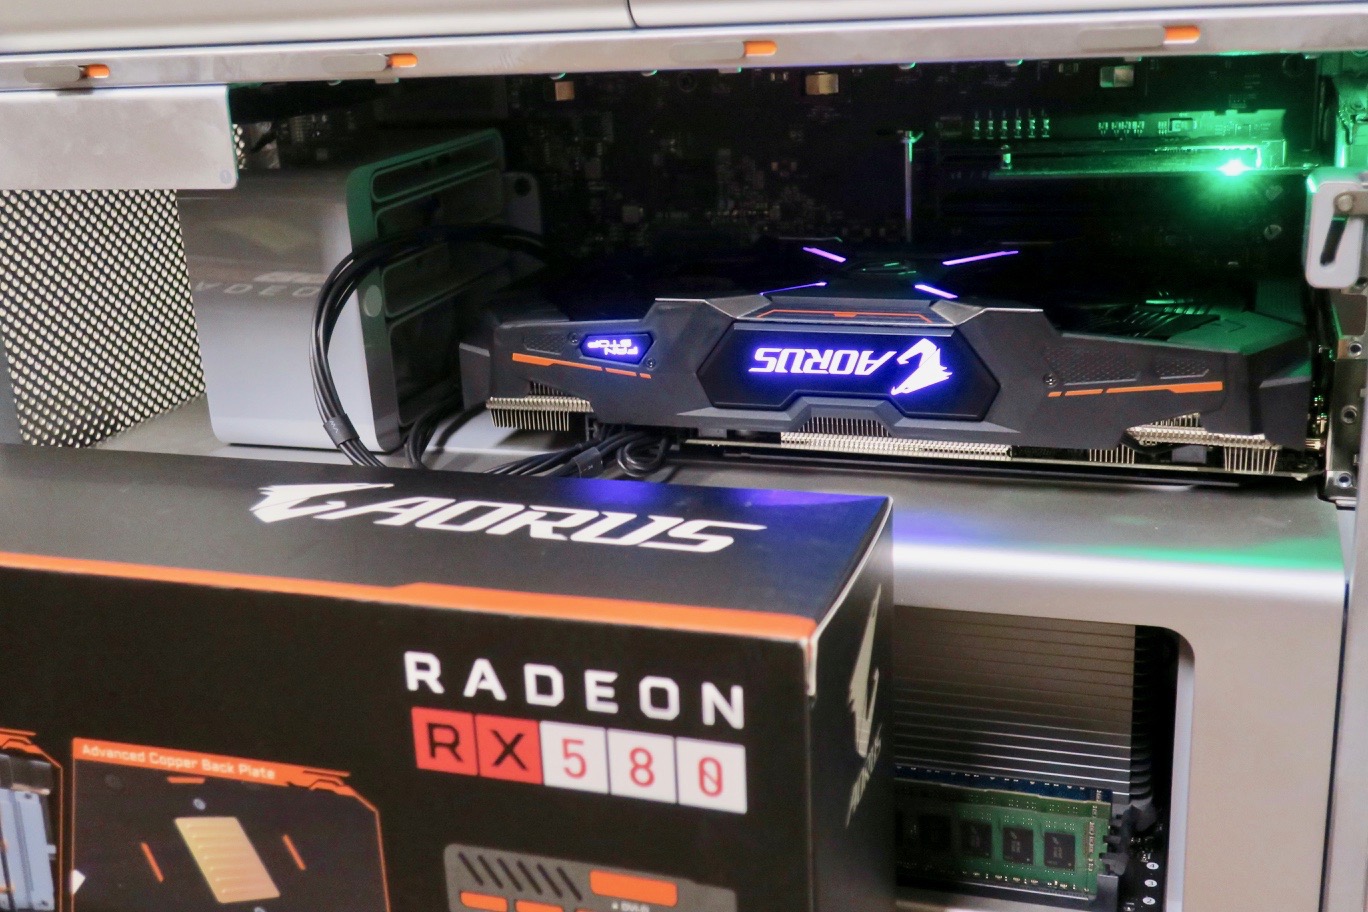 Amd Radeon Rx 580 Works In Macos Macrumors Forums